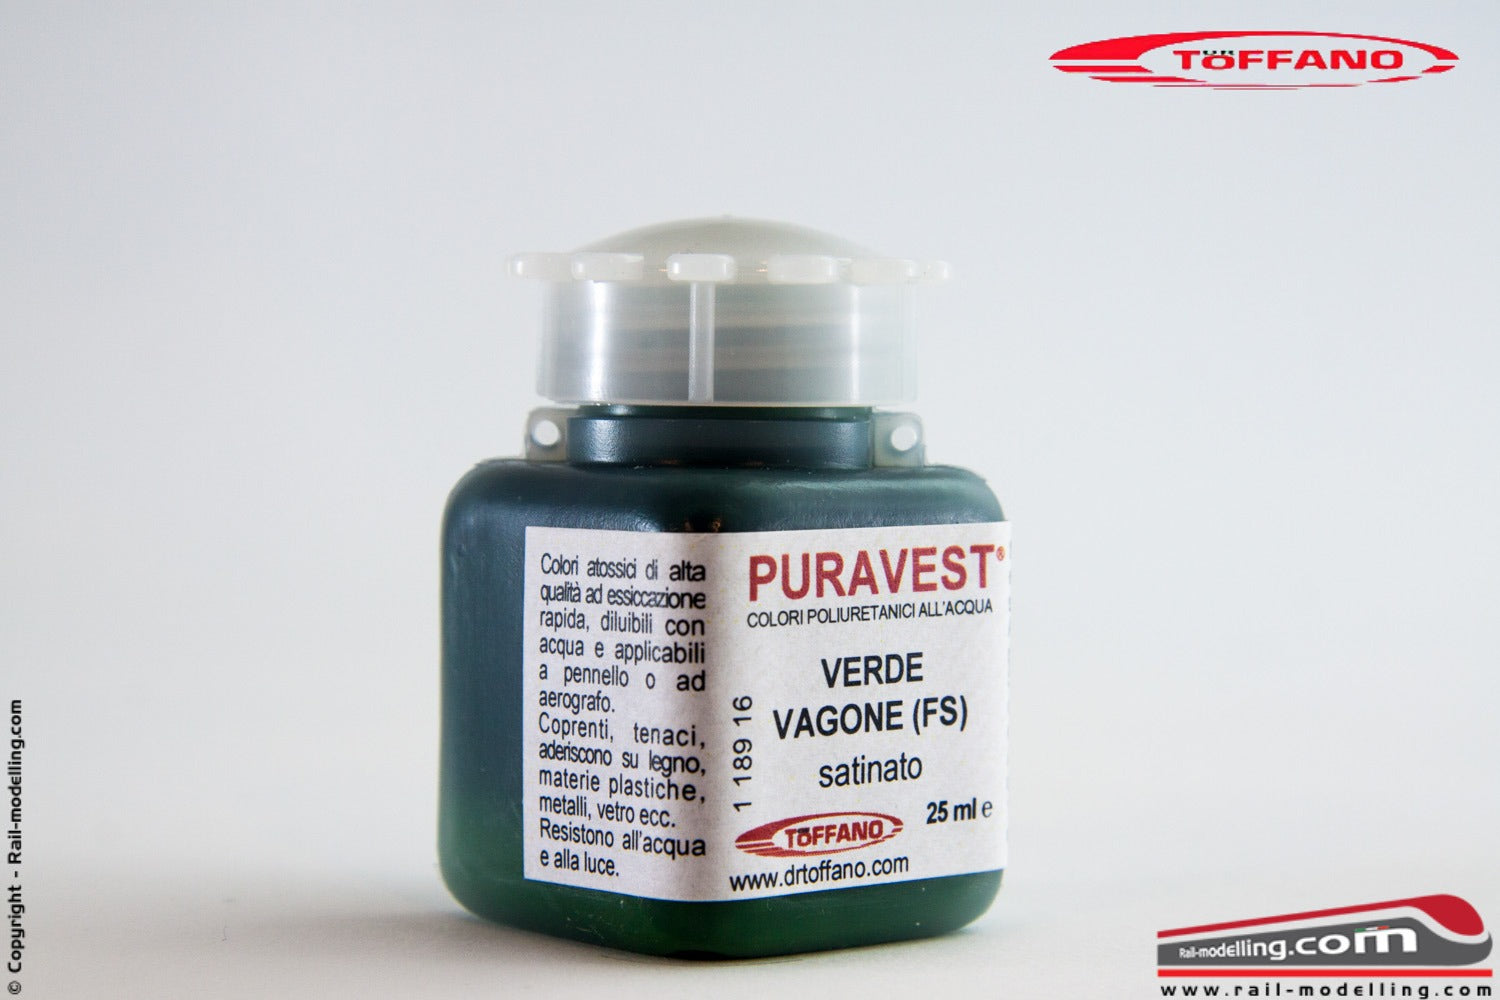 DR TOFFANO - PURAVEST 11891412 Colore poliuretanico all'acqua VERDE VAGONE (FS) satinato da 25ml